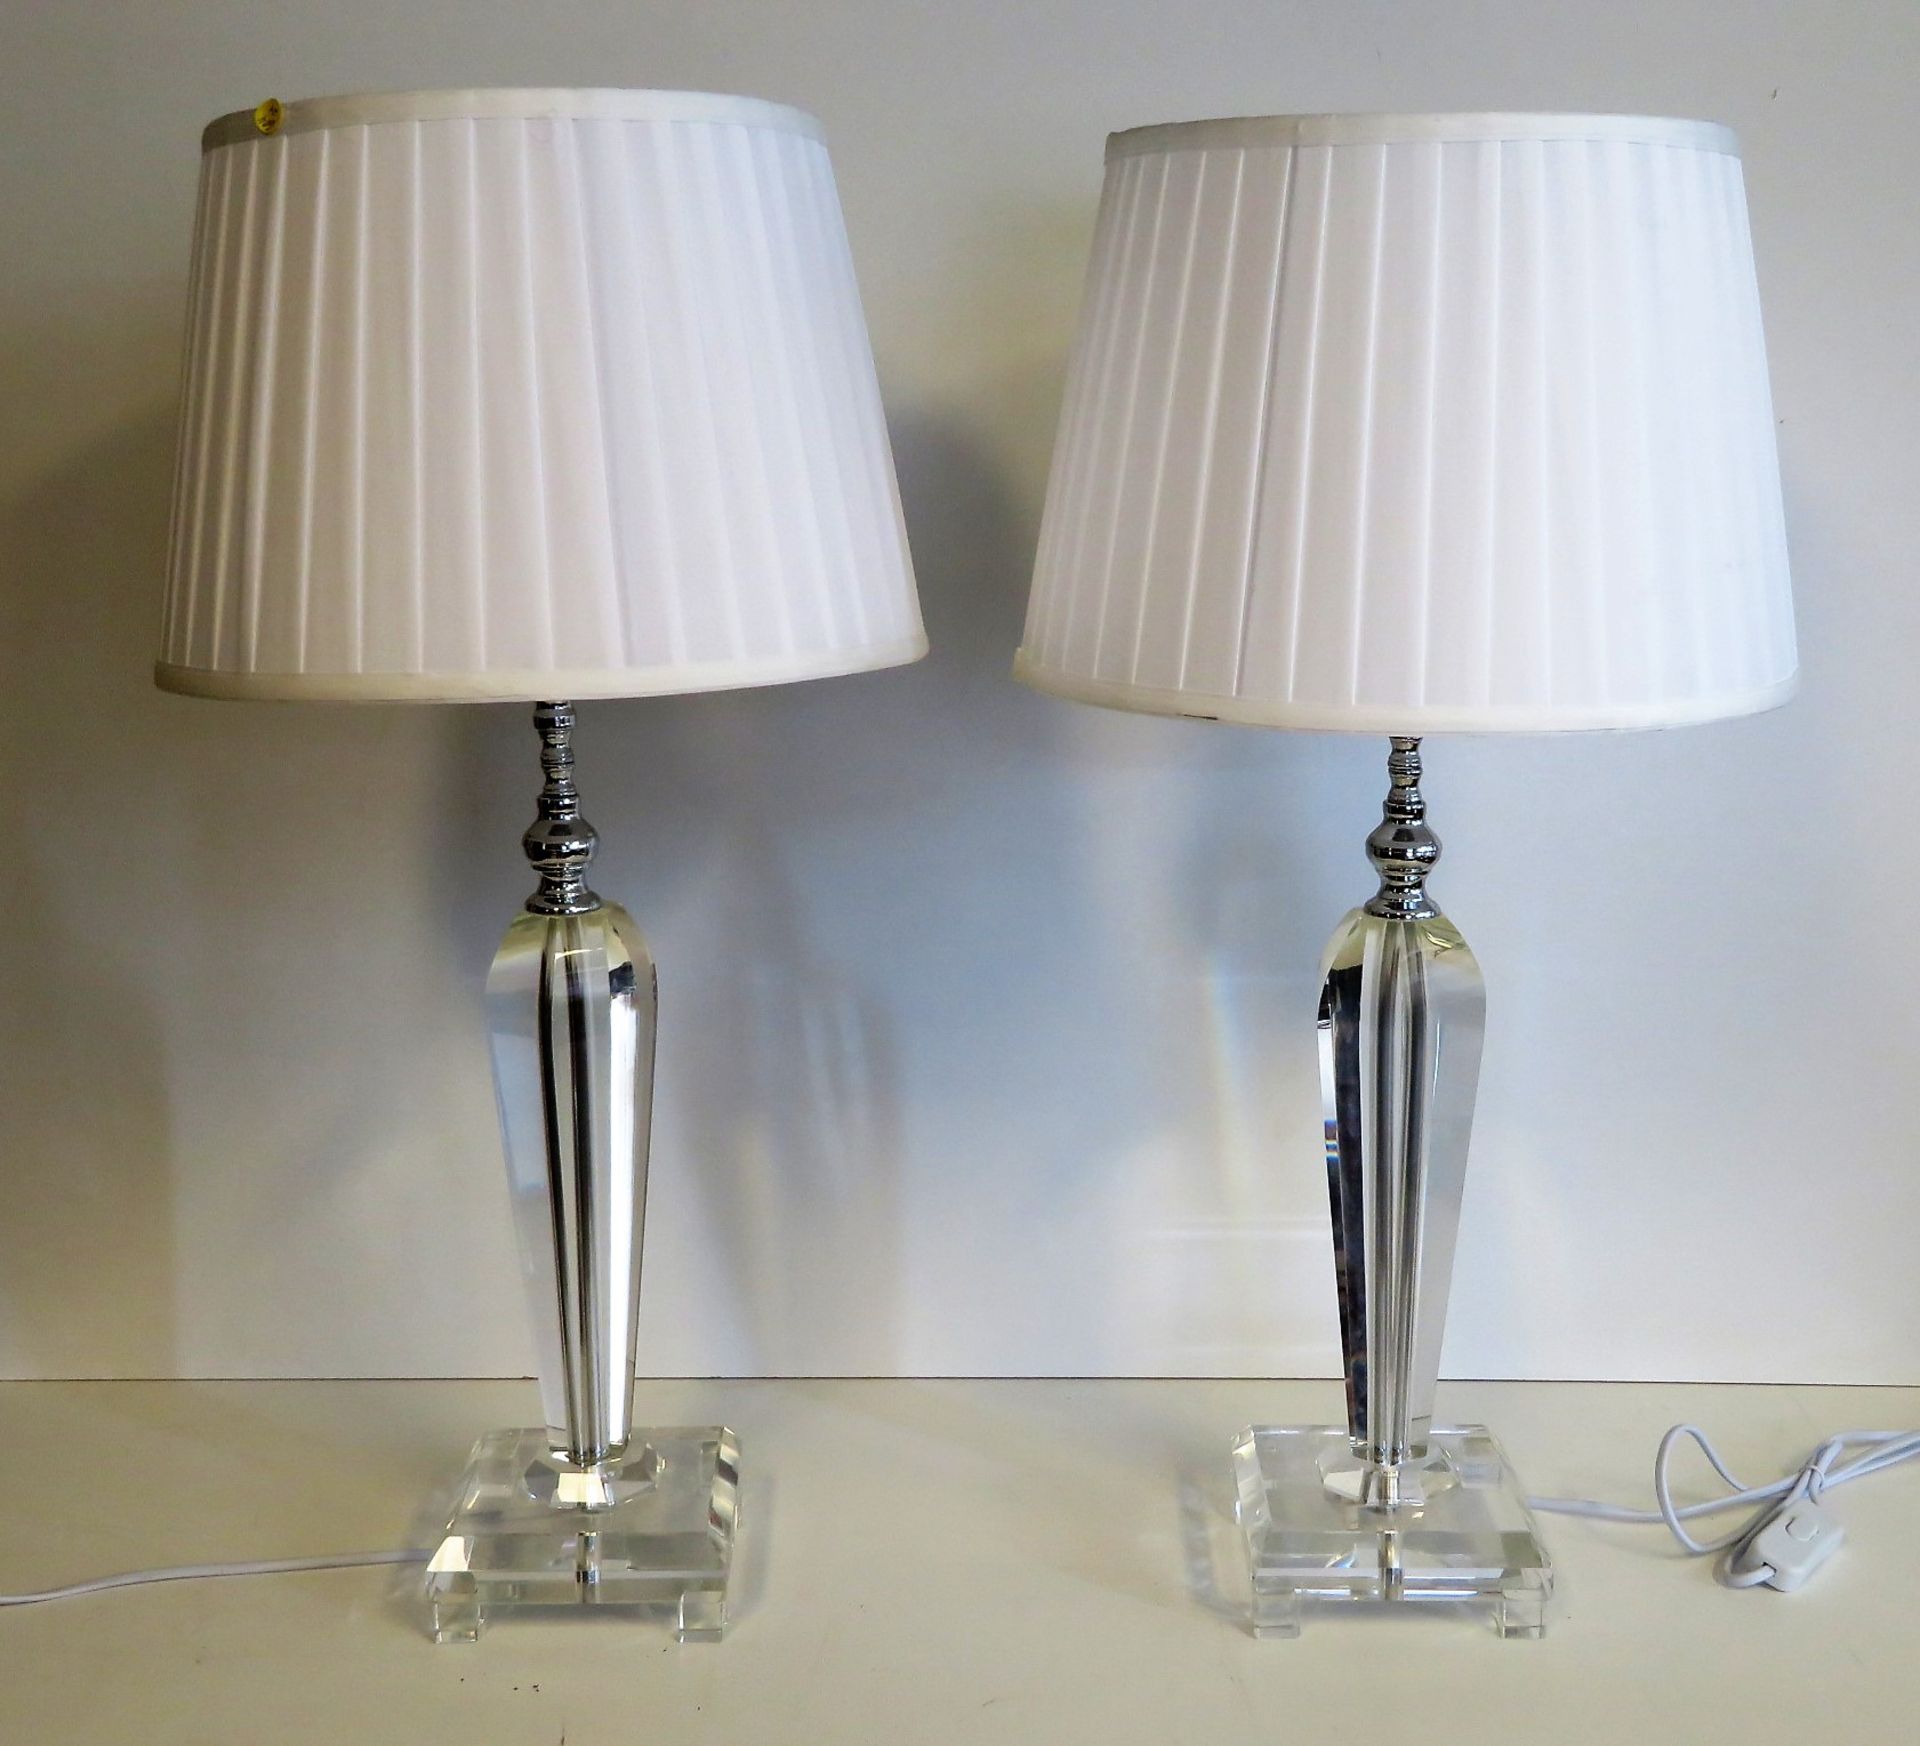 2 moderne Tischlampen, geschliffener, farbloser Kristallfuß, 49 (ohne Schirm) x 14 x 14 cm.